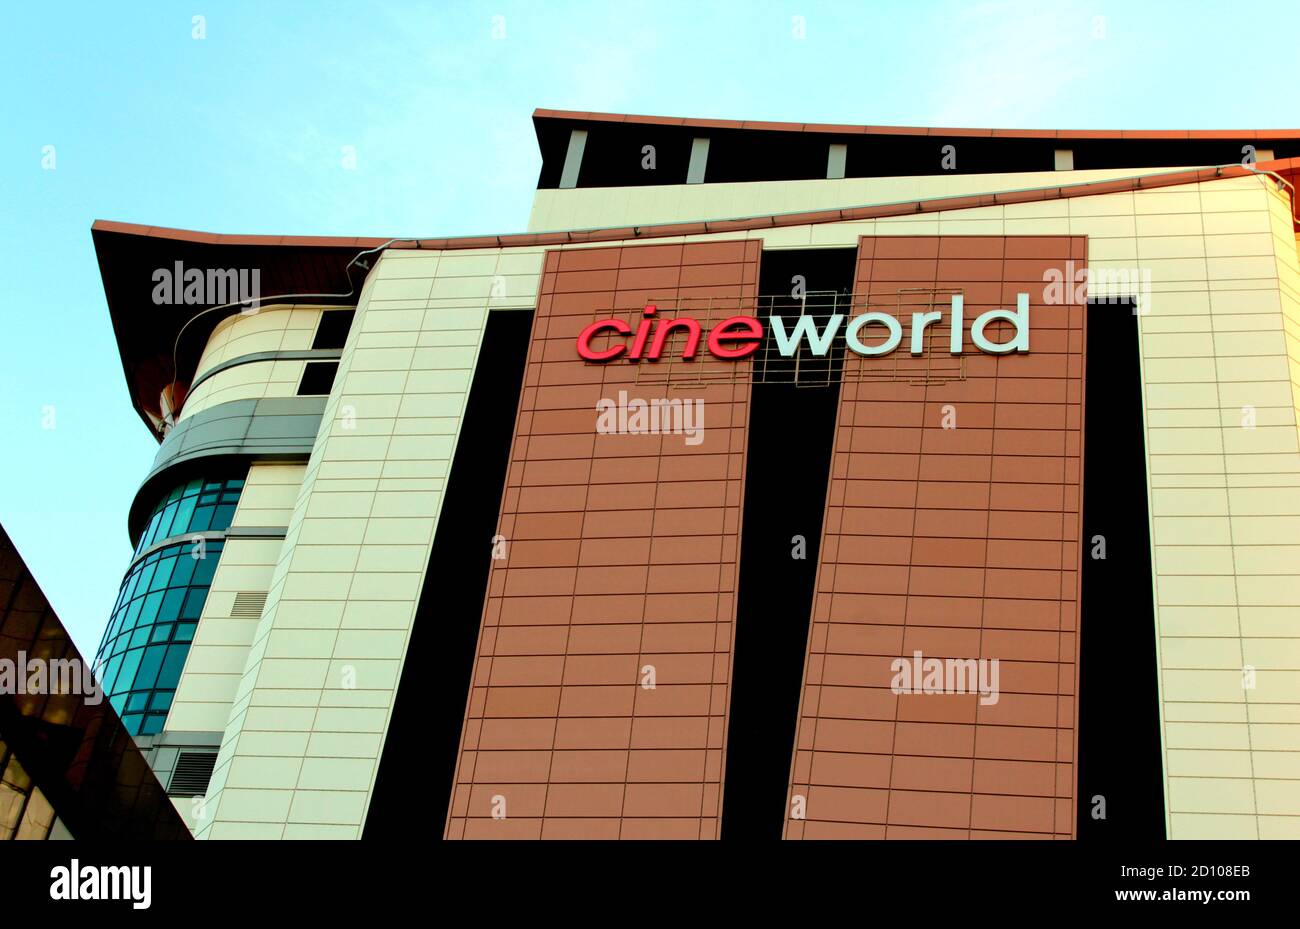 Dieses riesige Gebäude ist der Kinokomplex Cineworld in Glasgow, Schottland. Es hat 18 Leinwände auf 6 Ebenen und ist das geschäftigste Kino in Großbritannien. ALAN WYLIE/ALAMY © Stockfoto